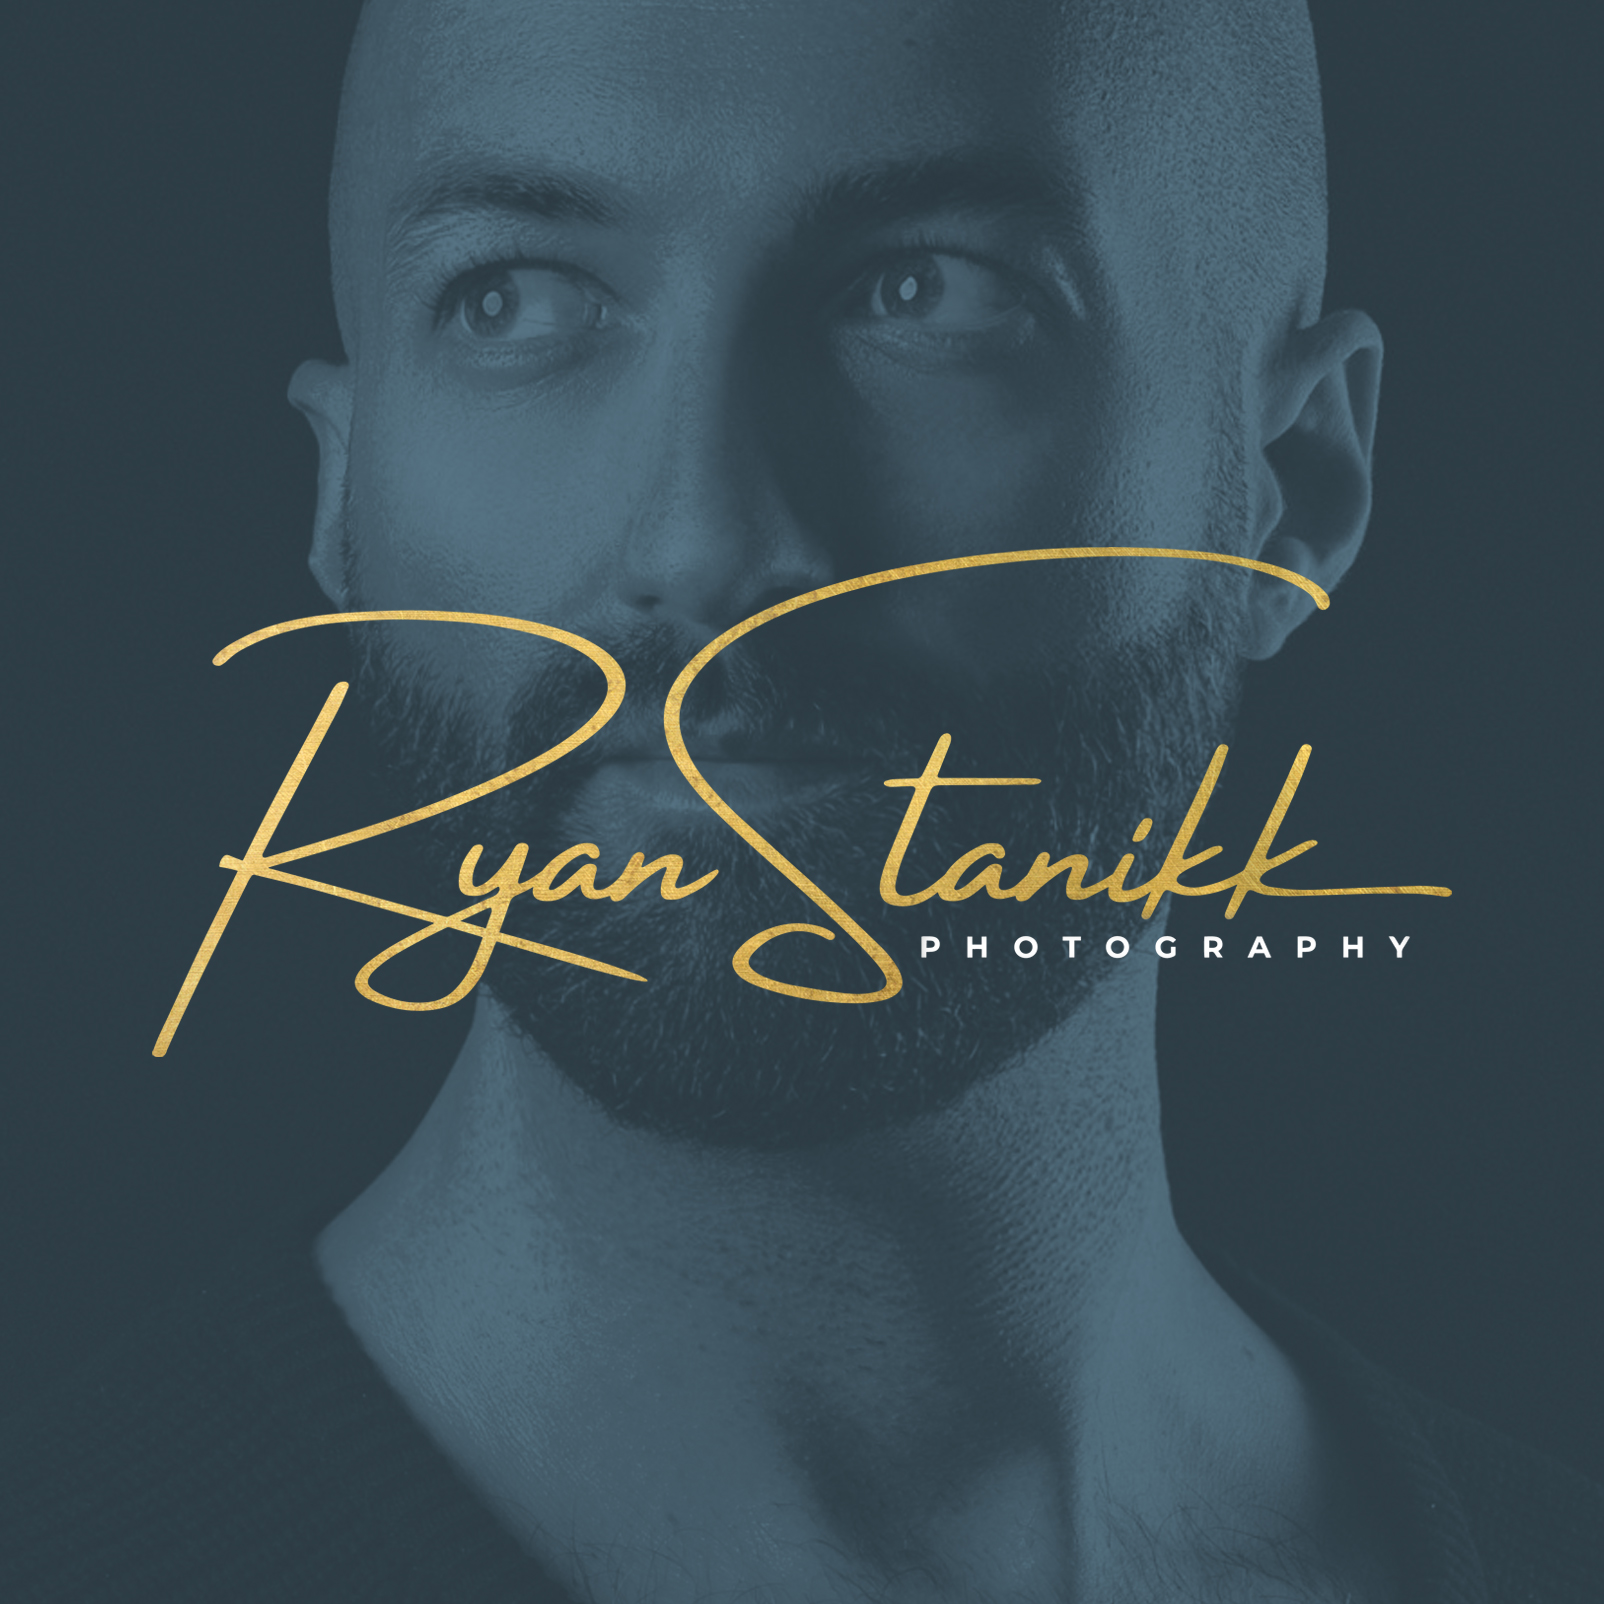 Ryan Stanikk Photography